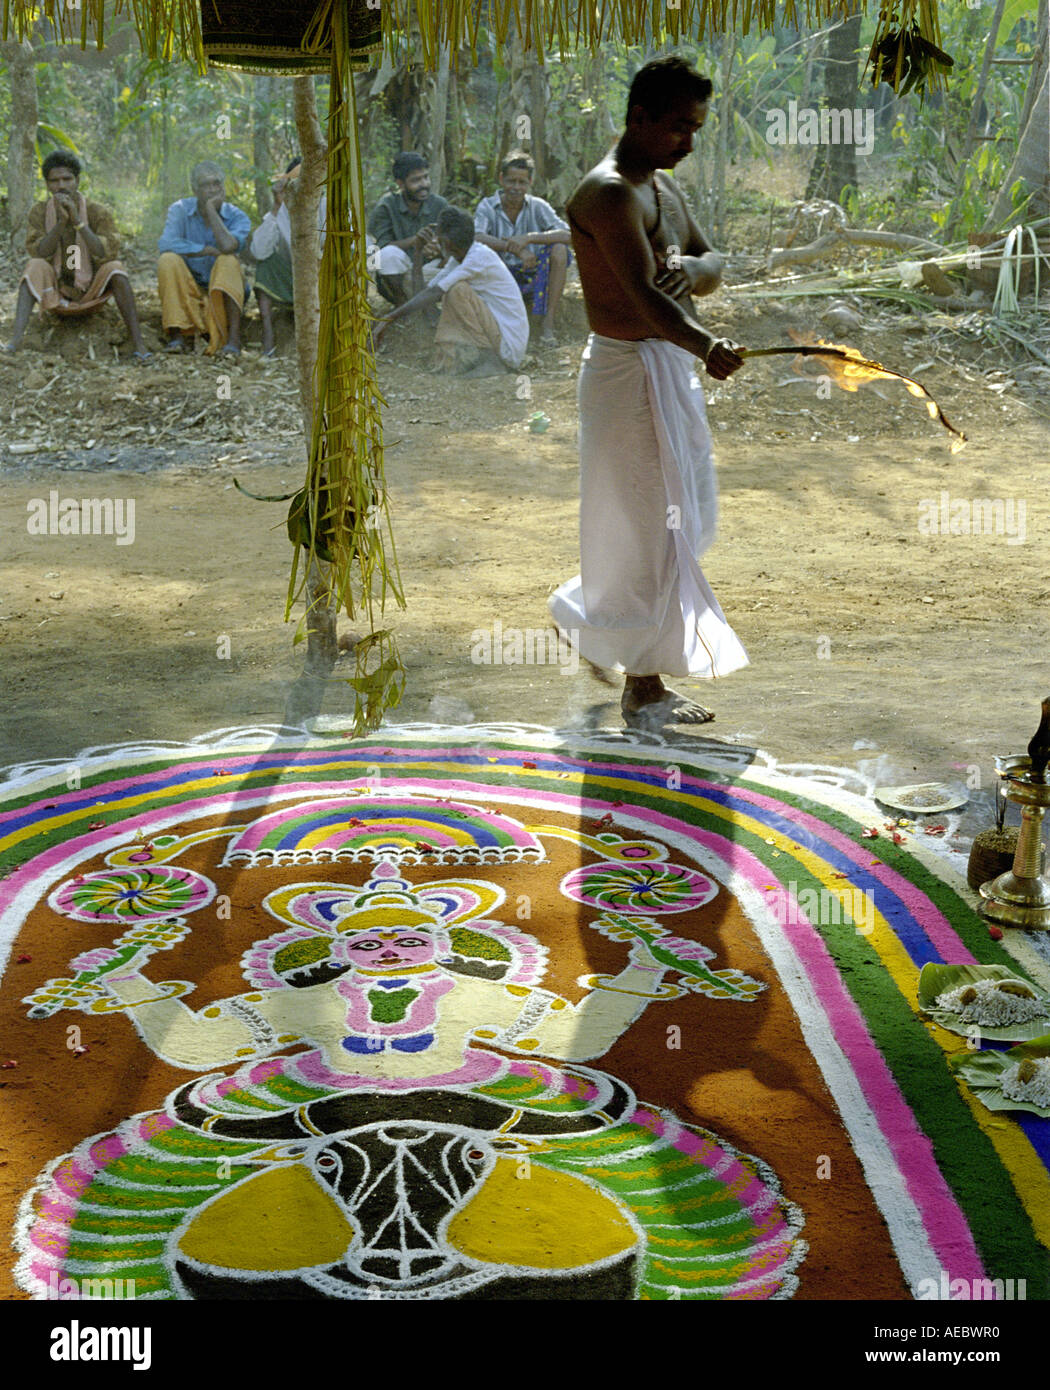 Indisch-hinduistischen Priester darstellende Rituale in einem Tempel mit handgezeichneten Blumenmuster genannt Kalam im Vordergrund Stockfoto